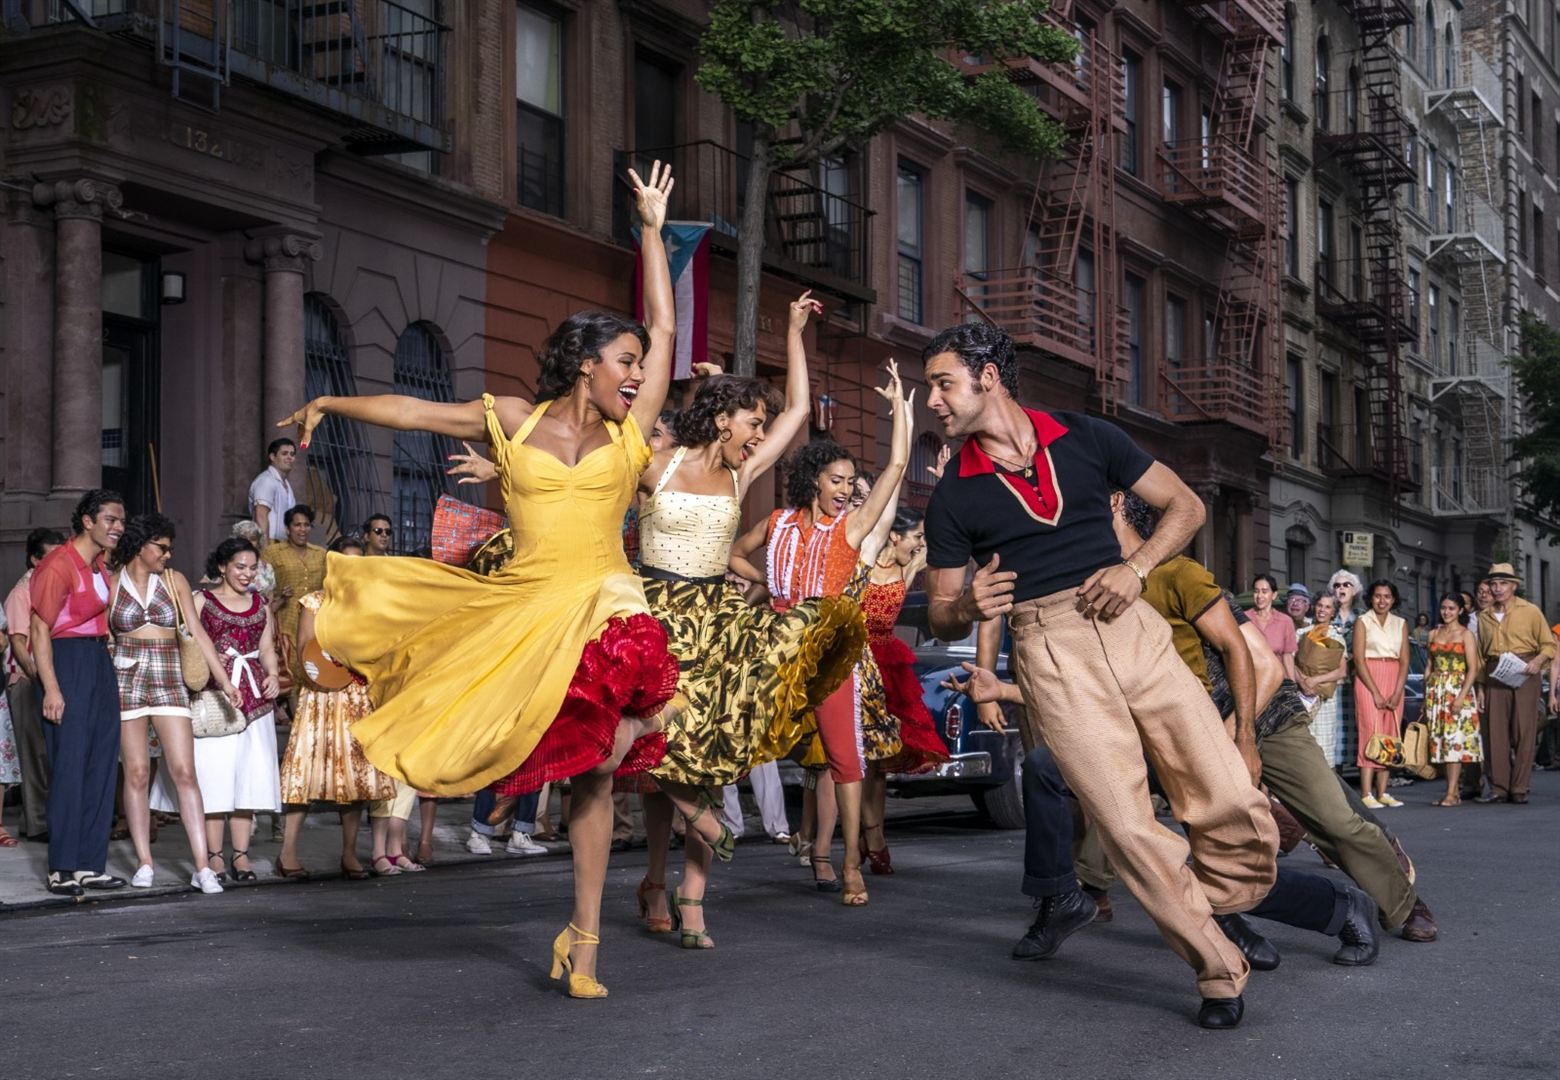 In einer Straße von New York tanzen ausgelassen junge Frauen und Männer in bunten Kostümen.